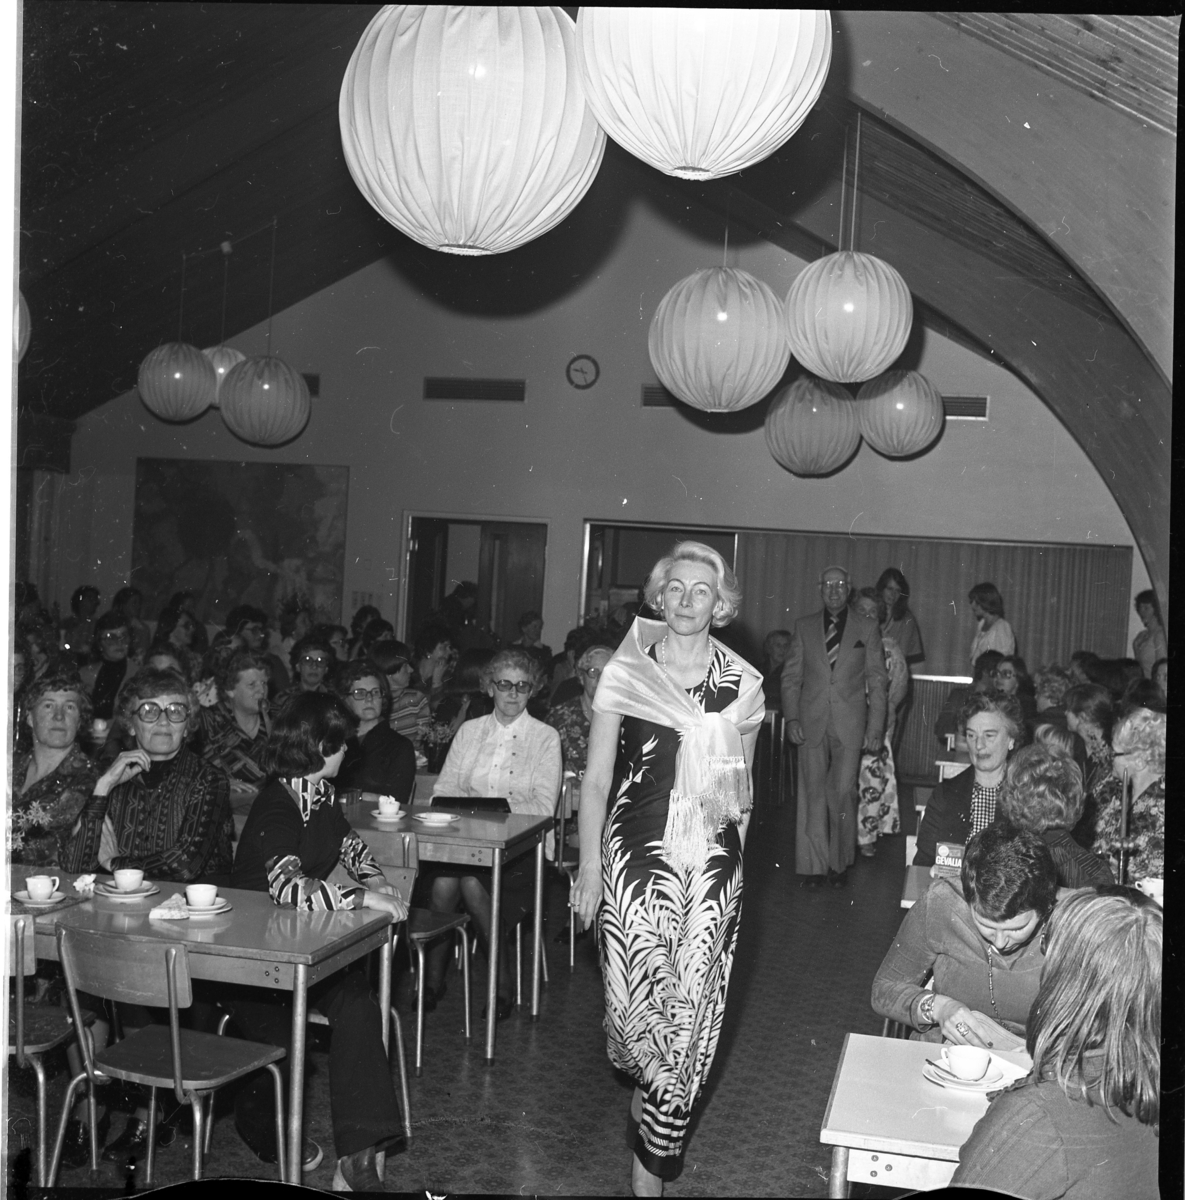 En kvinnlig mannekäng skrider fram i en gång mellan bord med publik och kaffekoppar. I taket hänger flera lampor i form av stora runda bollar.